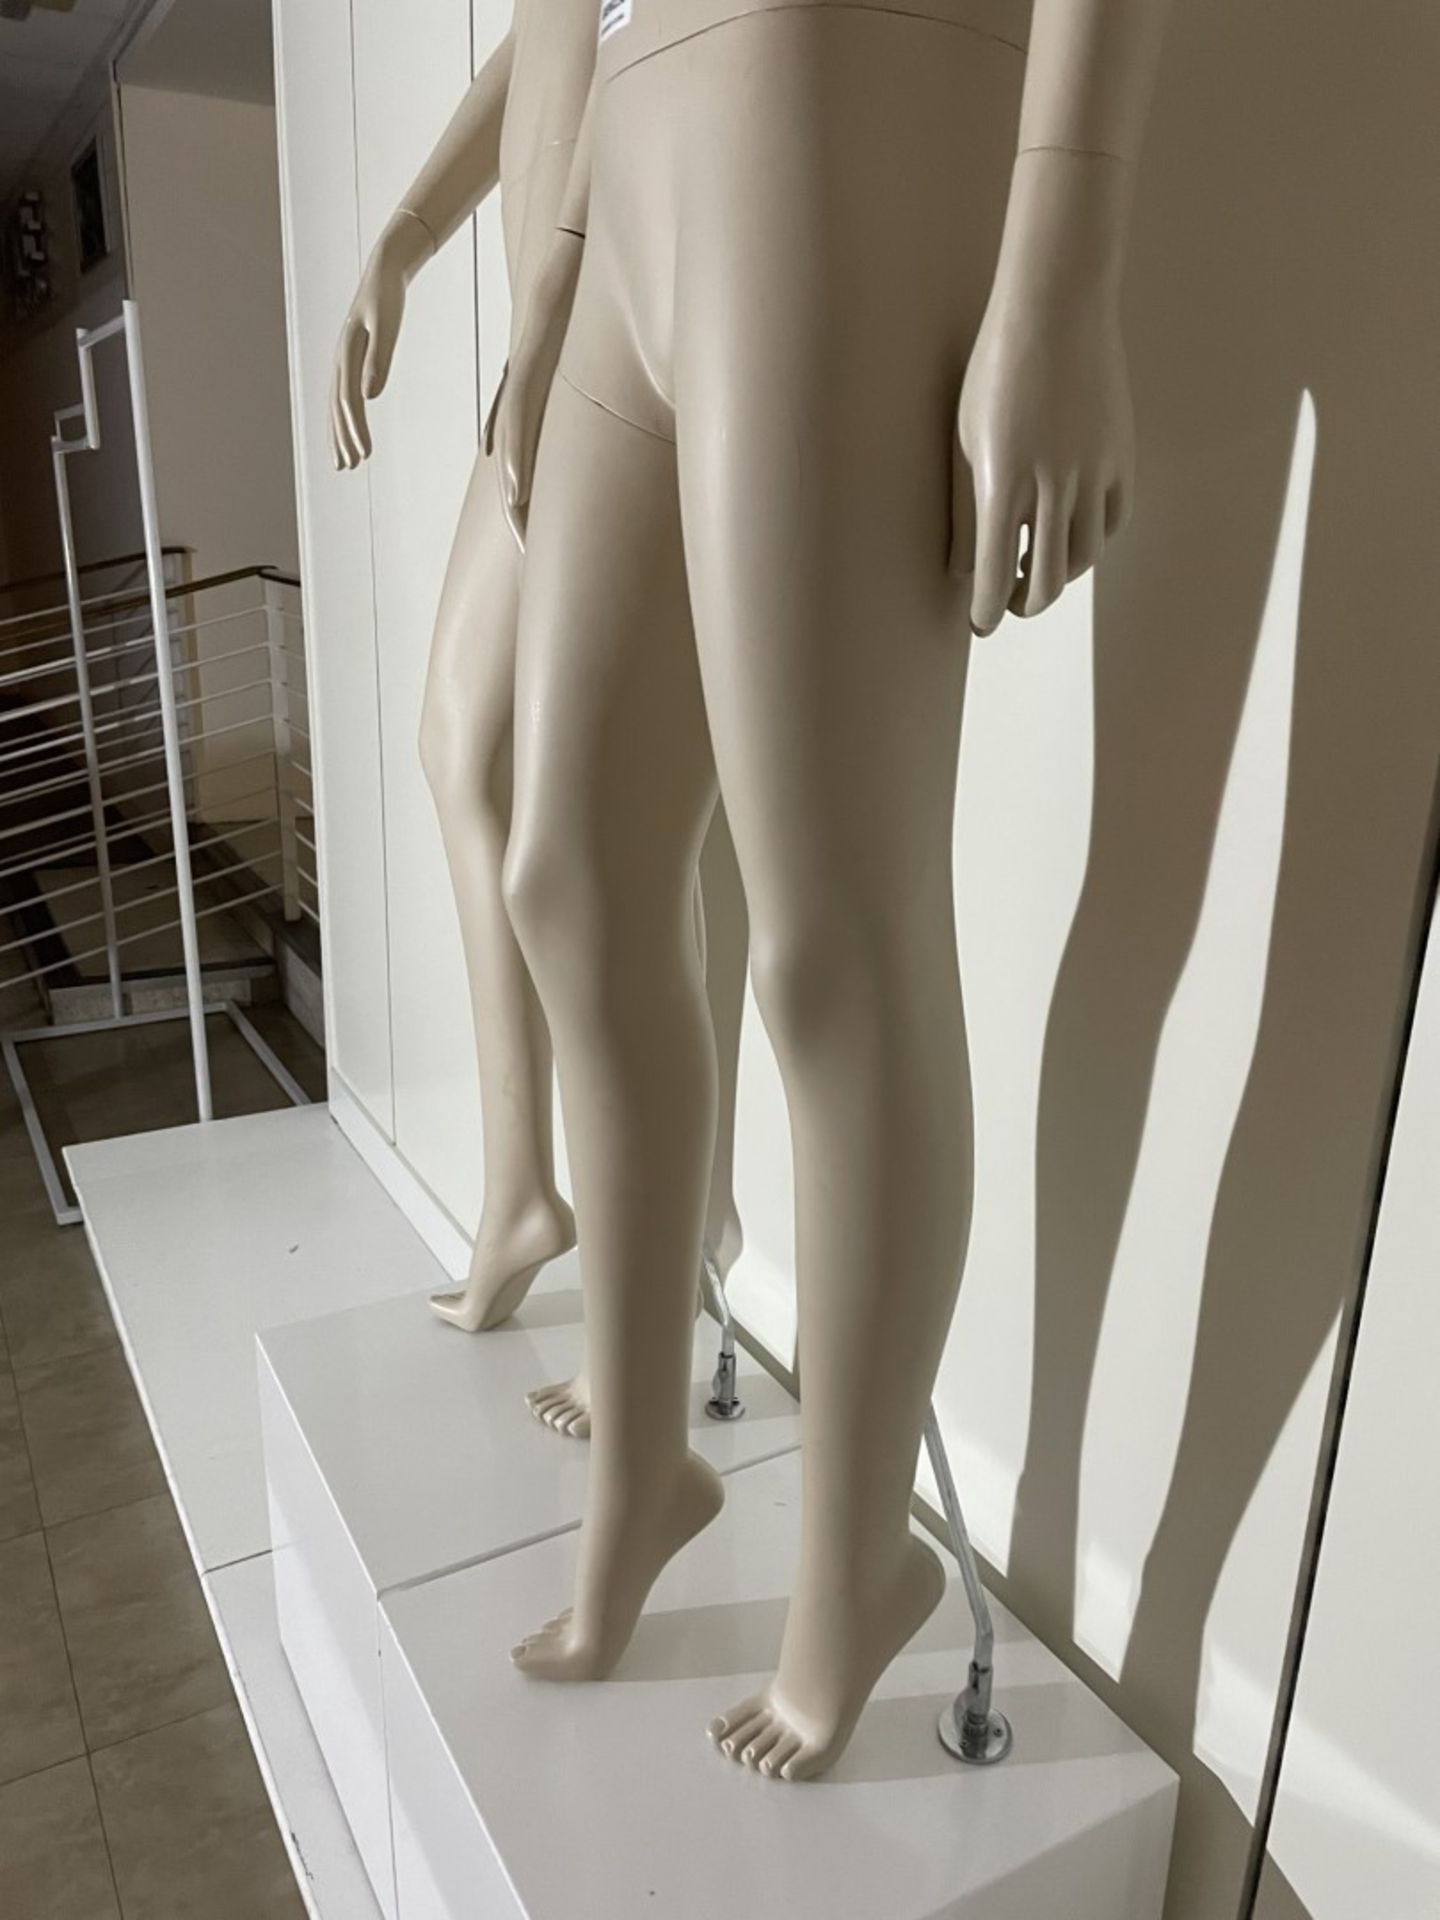 2 x Full Size Female Mannequins on Pedestal Plinth Stands - CL670 - Ref: GEM236 - Location: - Image 4 of 11